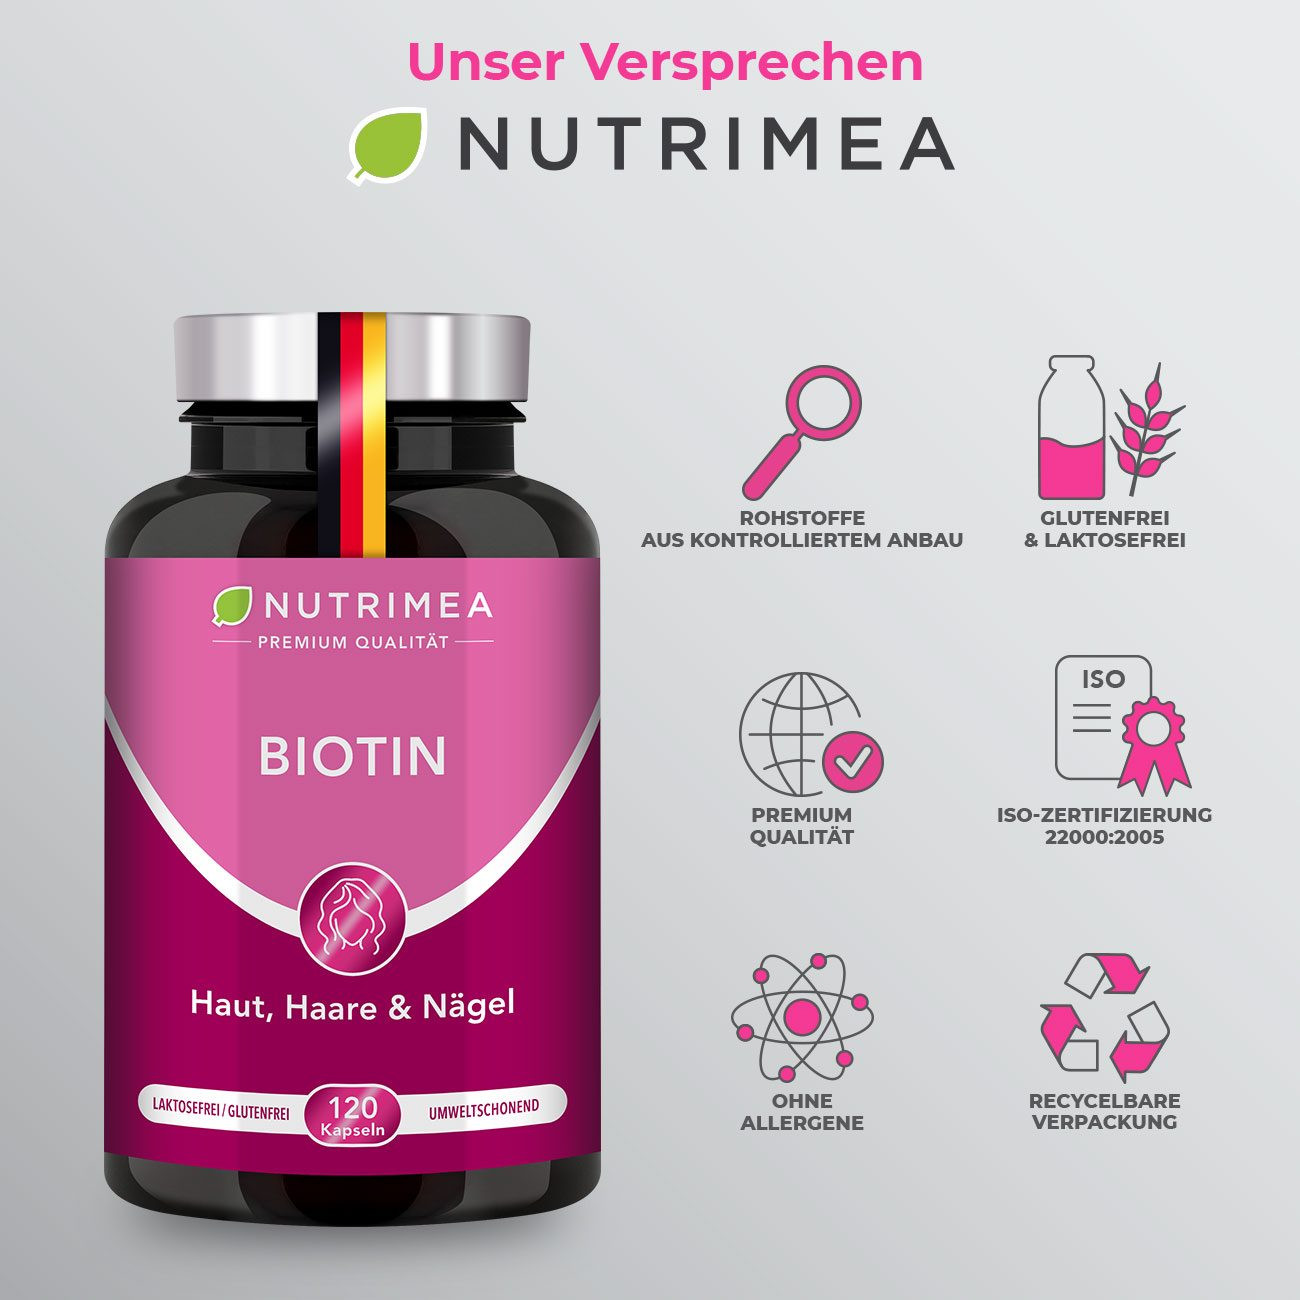 Bild der Verpackung des Supplements Biotin, Zink & Selen